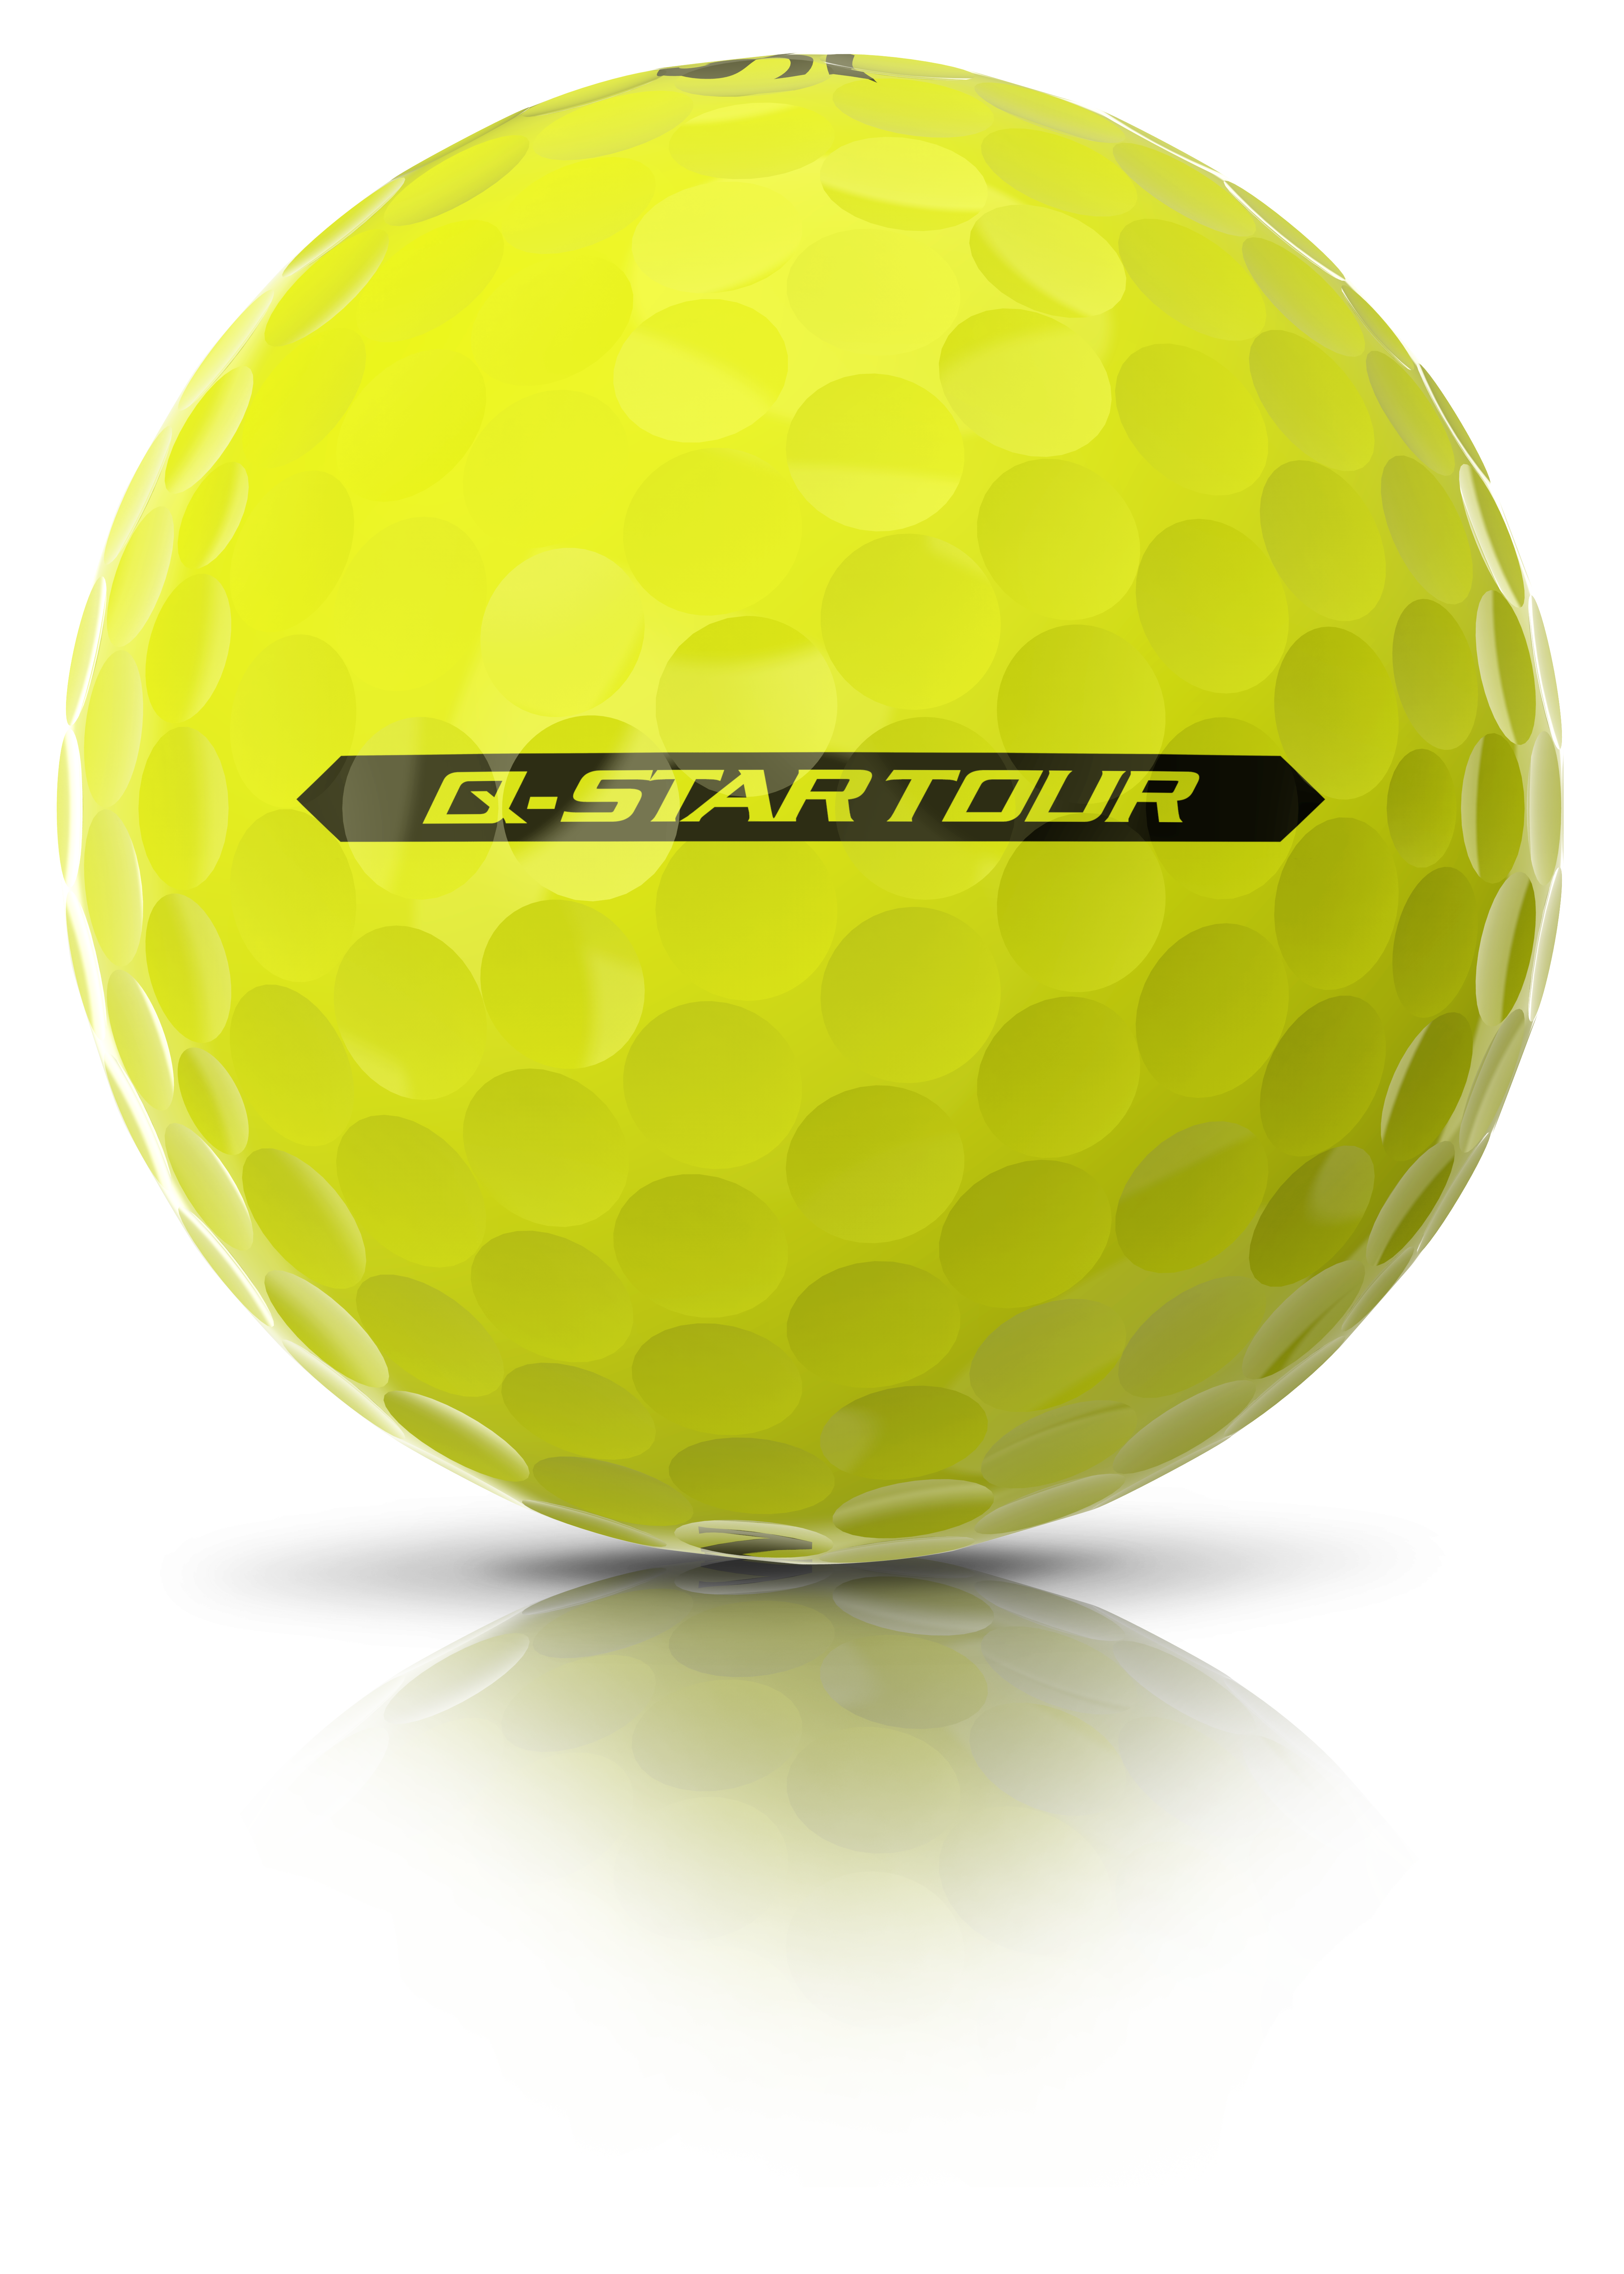 Srixon Q-STAR TOUR golf ball - FIRST LOOK